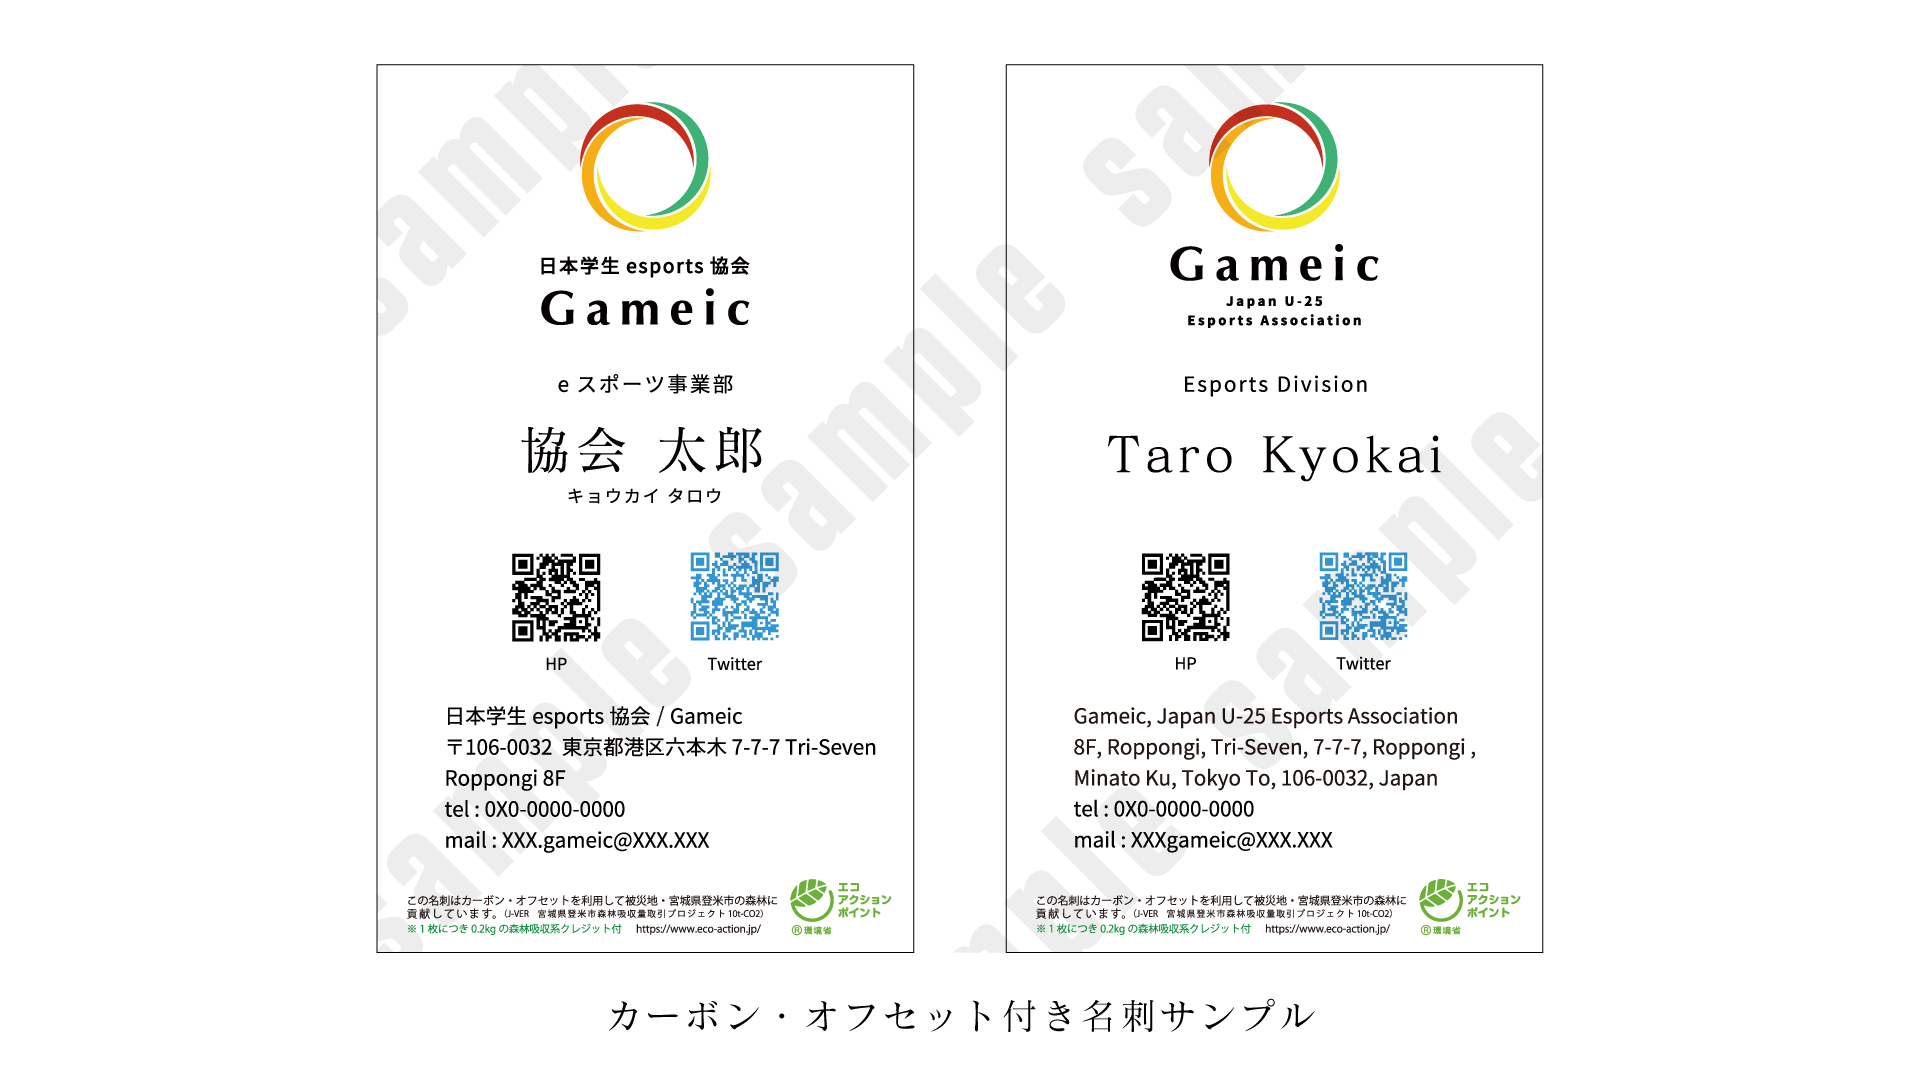 日本学生esports協会 / Gameic は、SDGｓへの取り組みとしてカーボン・オフセットを実施し、eスポーツのecoで持続可能な未来の発展に貢献して参ります。のサブ画像2